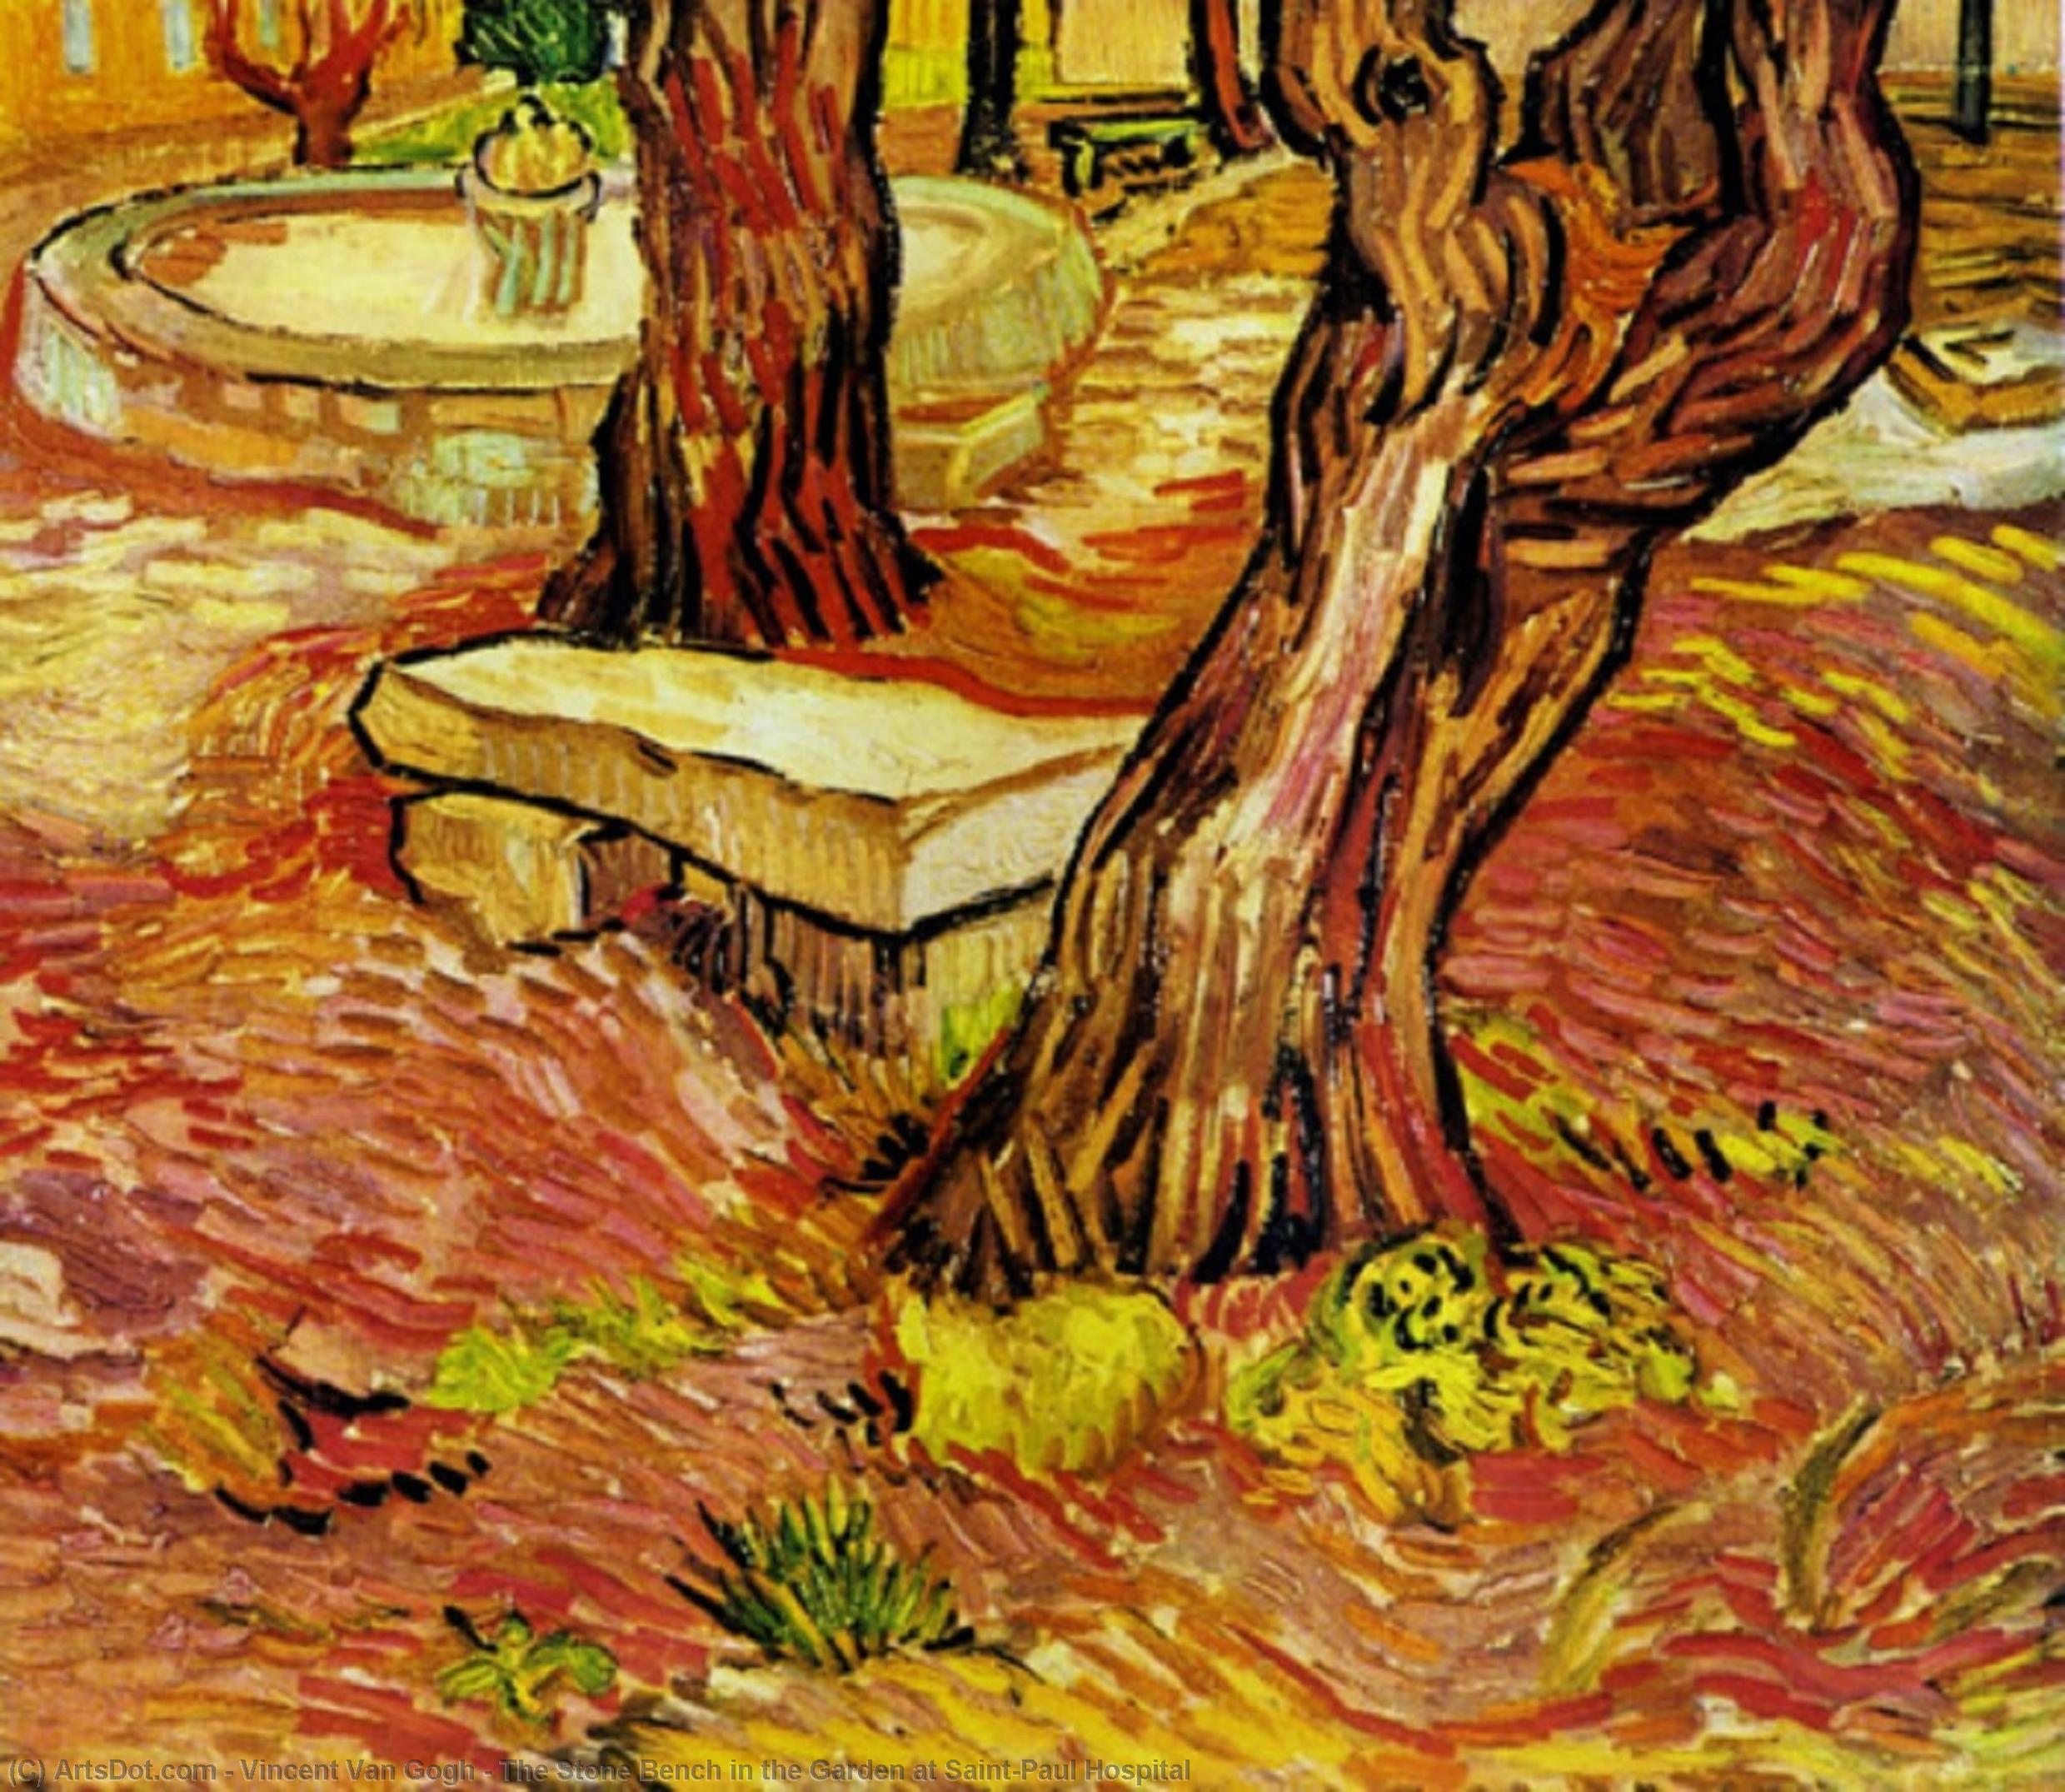 Compra Riproduzioni D'arte Del Museo Il banco di pietra nel giardino all`ospedale Saint-Paul, 1889 di Vincent Van Gogh (1853-1890, Netherlands) | ArtsDot.com